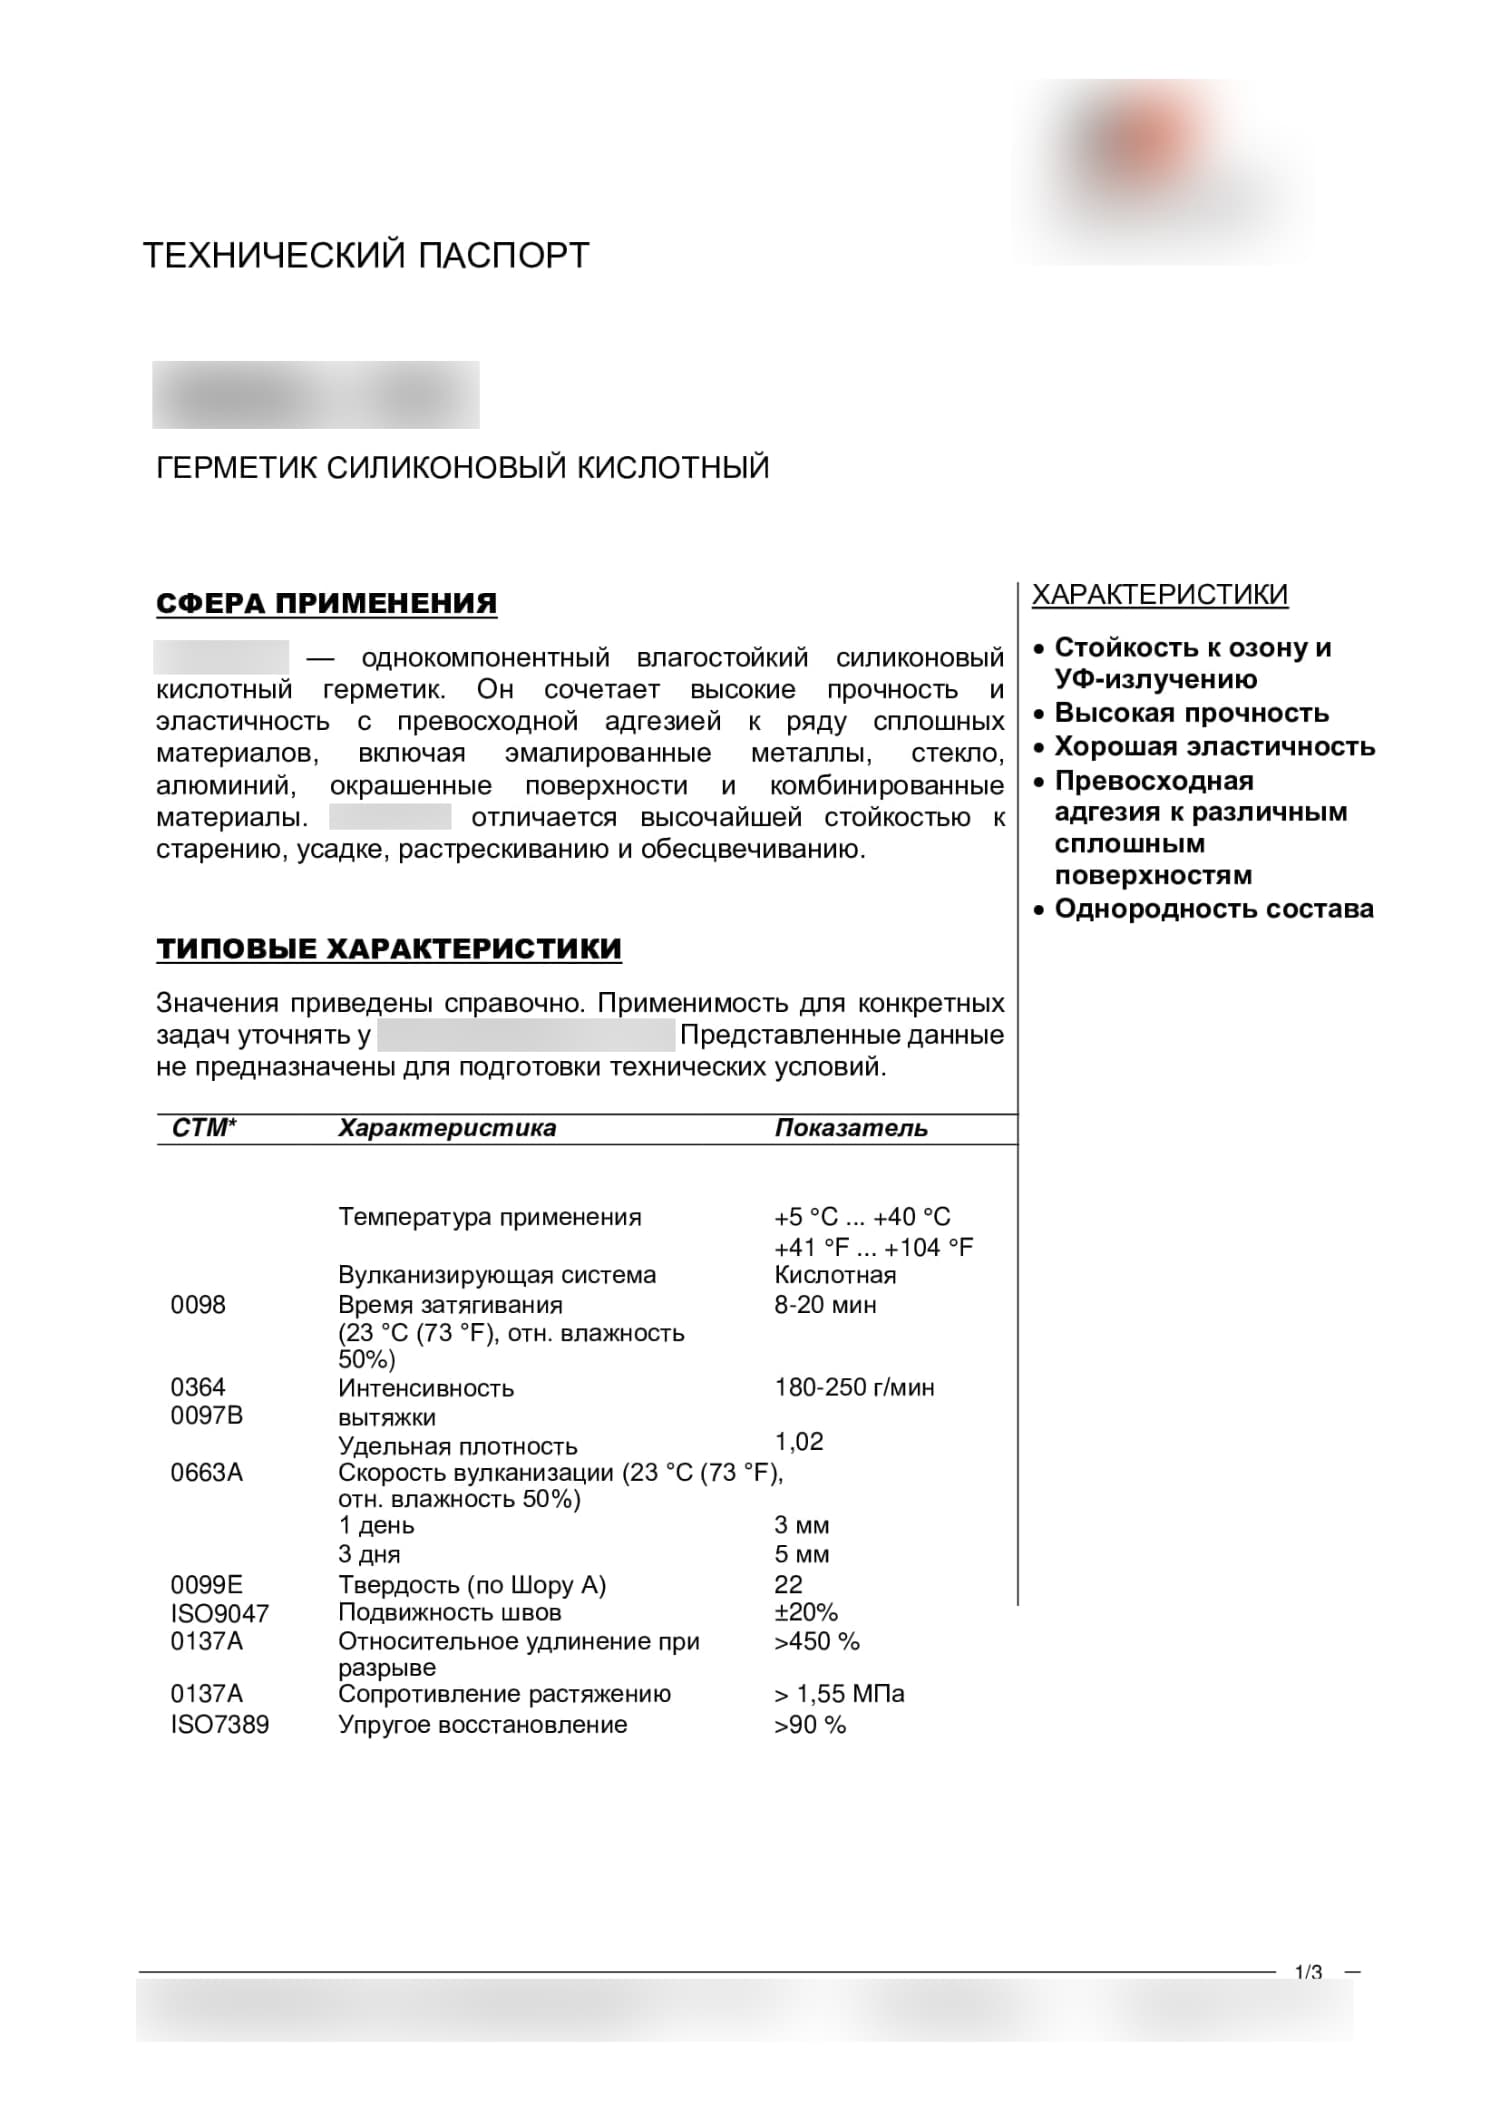 Пример перевода технического паспорта силиконового герметика на русский